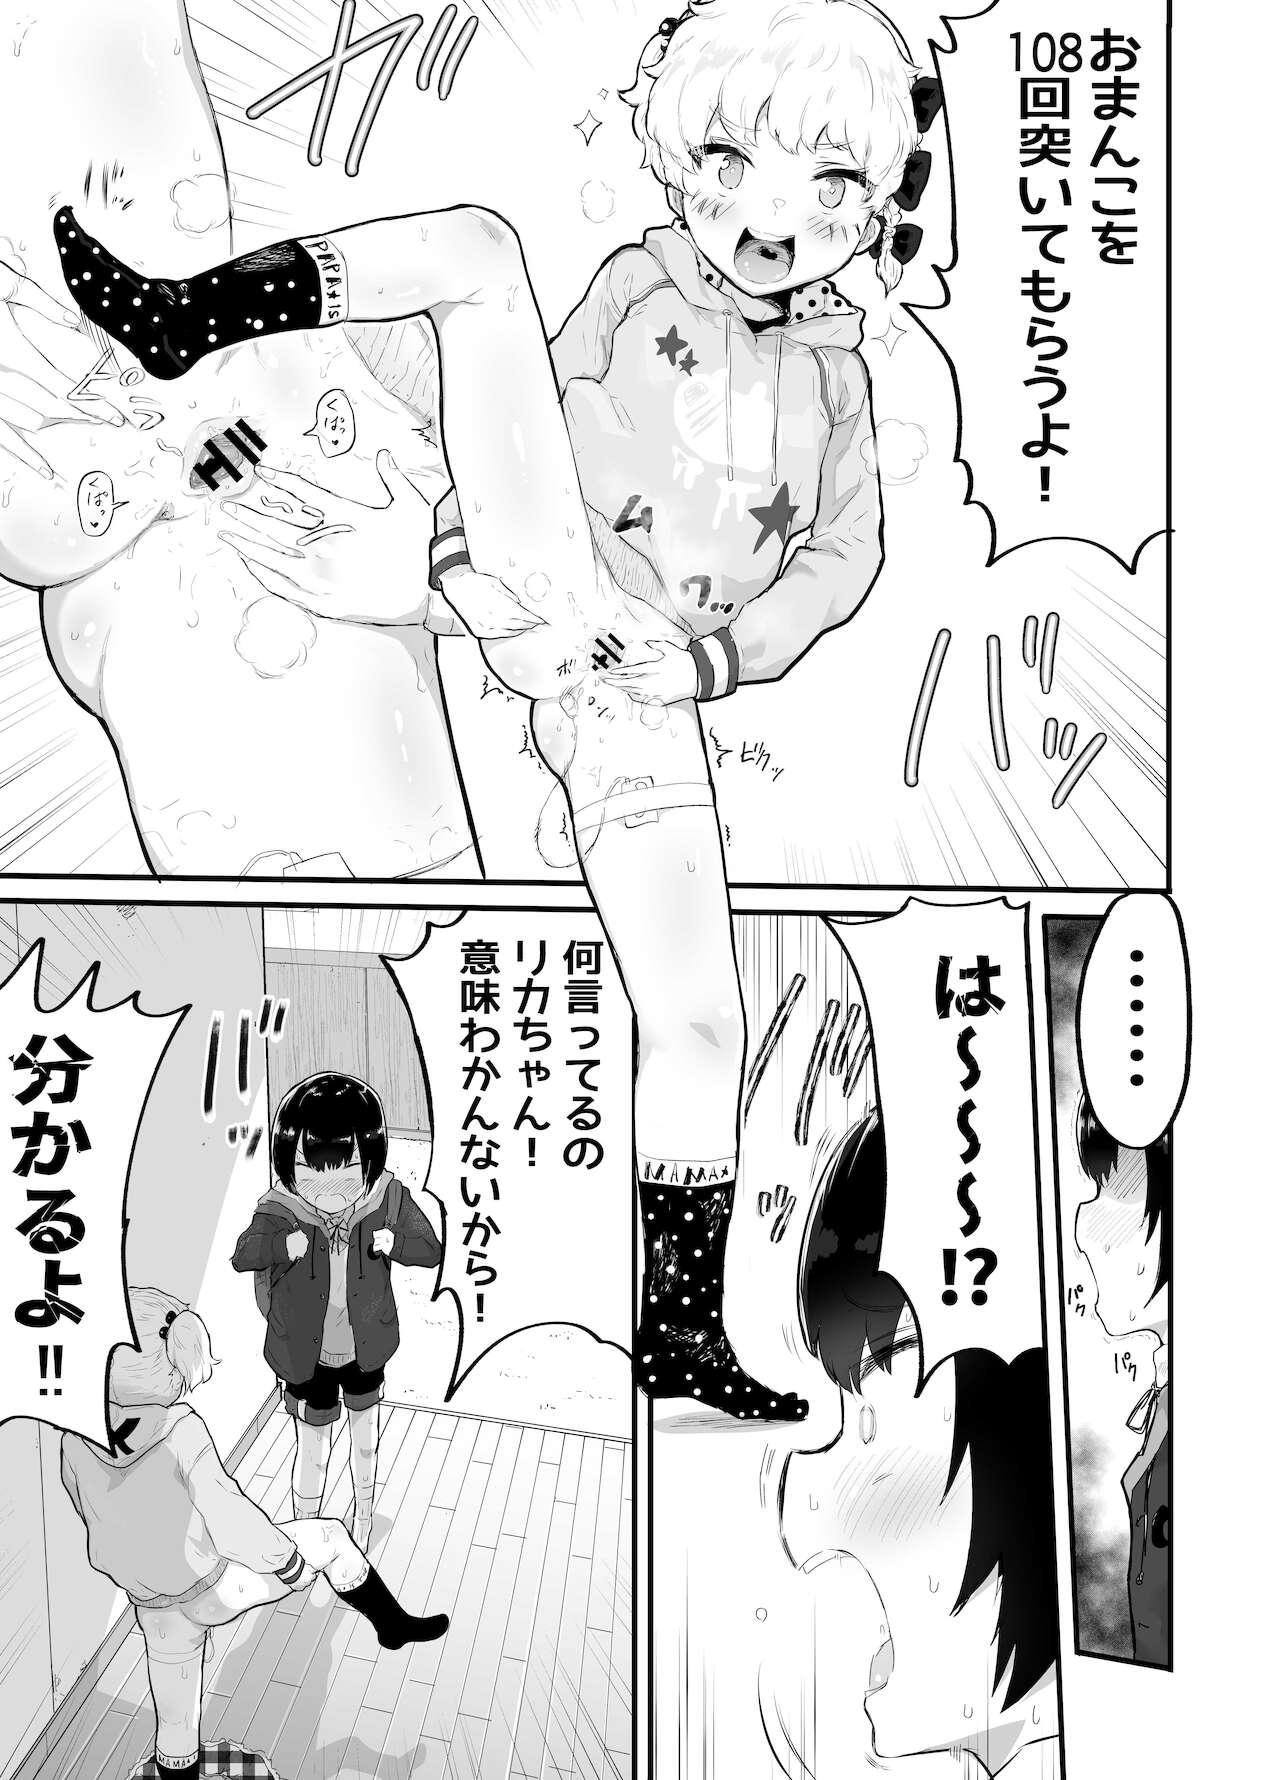 Kinky Oomisoka ni Omanko 108-kai Tsuku dake no Hon 3some - Page 5